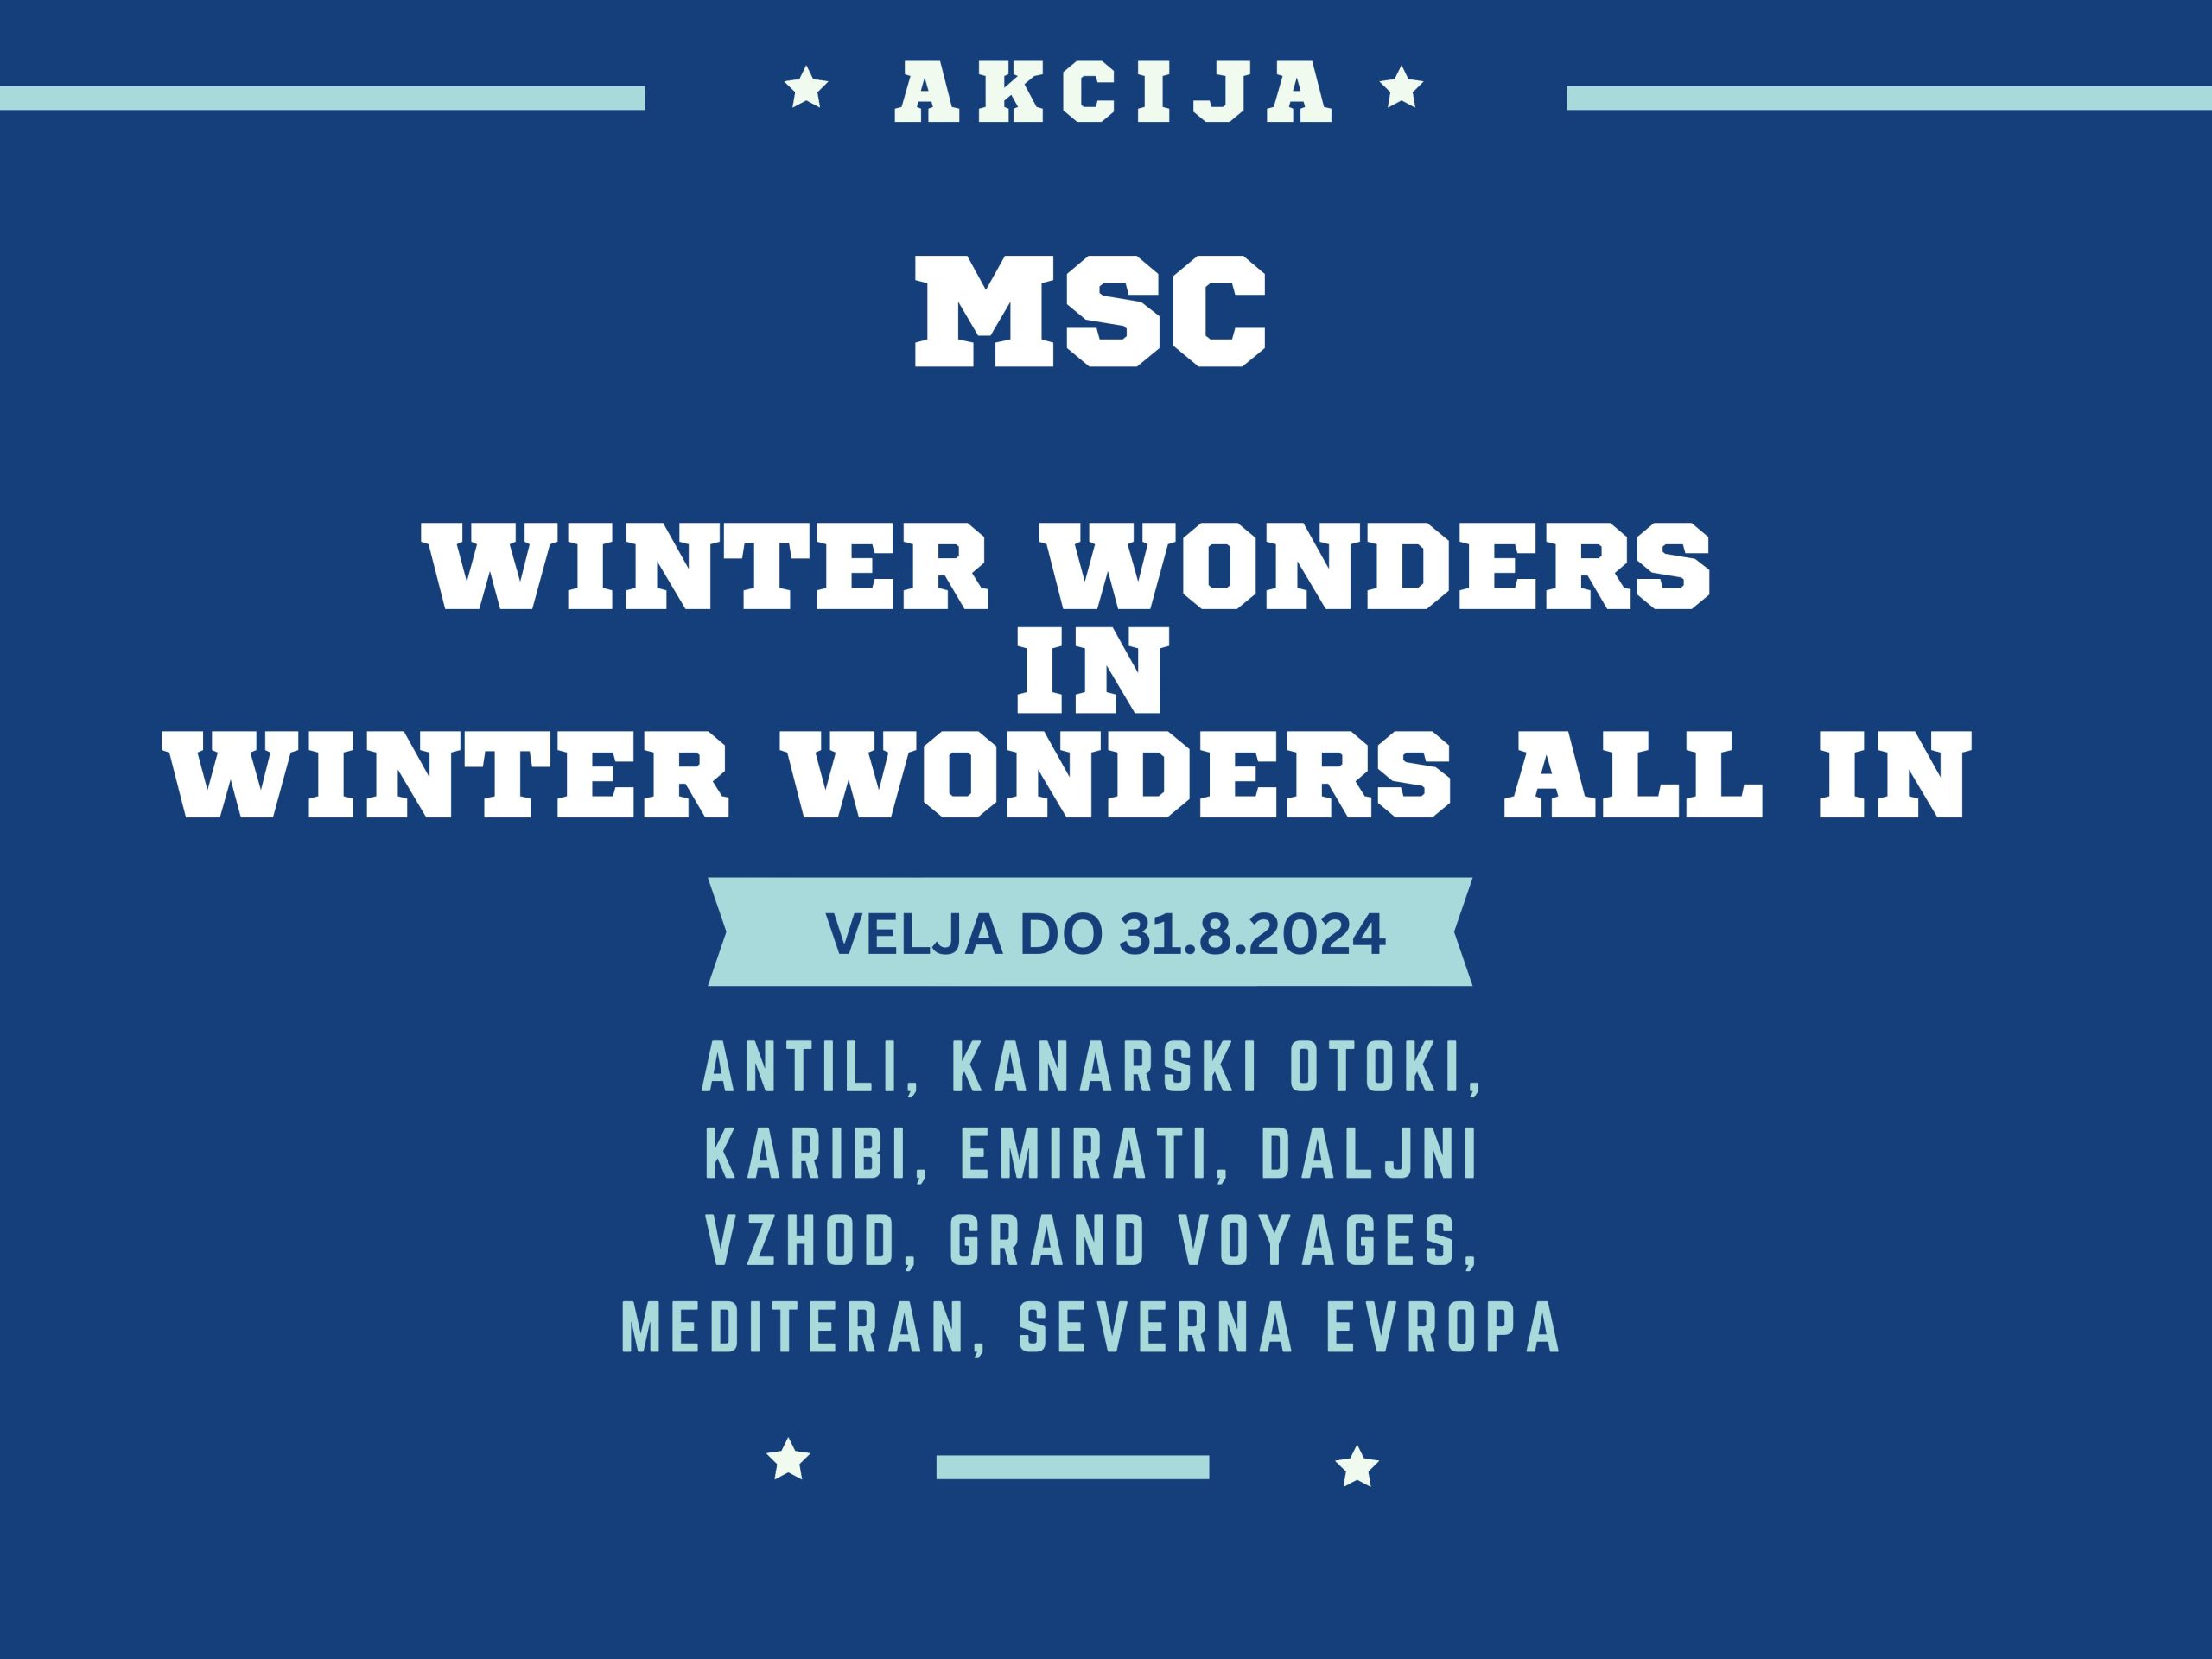 MSC cruises – Winter wonders akcija